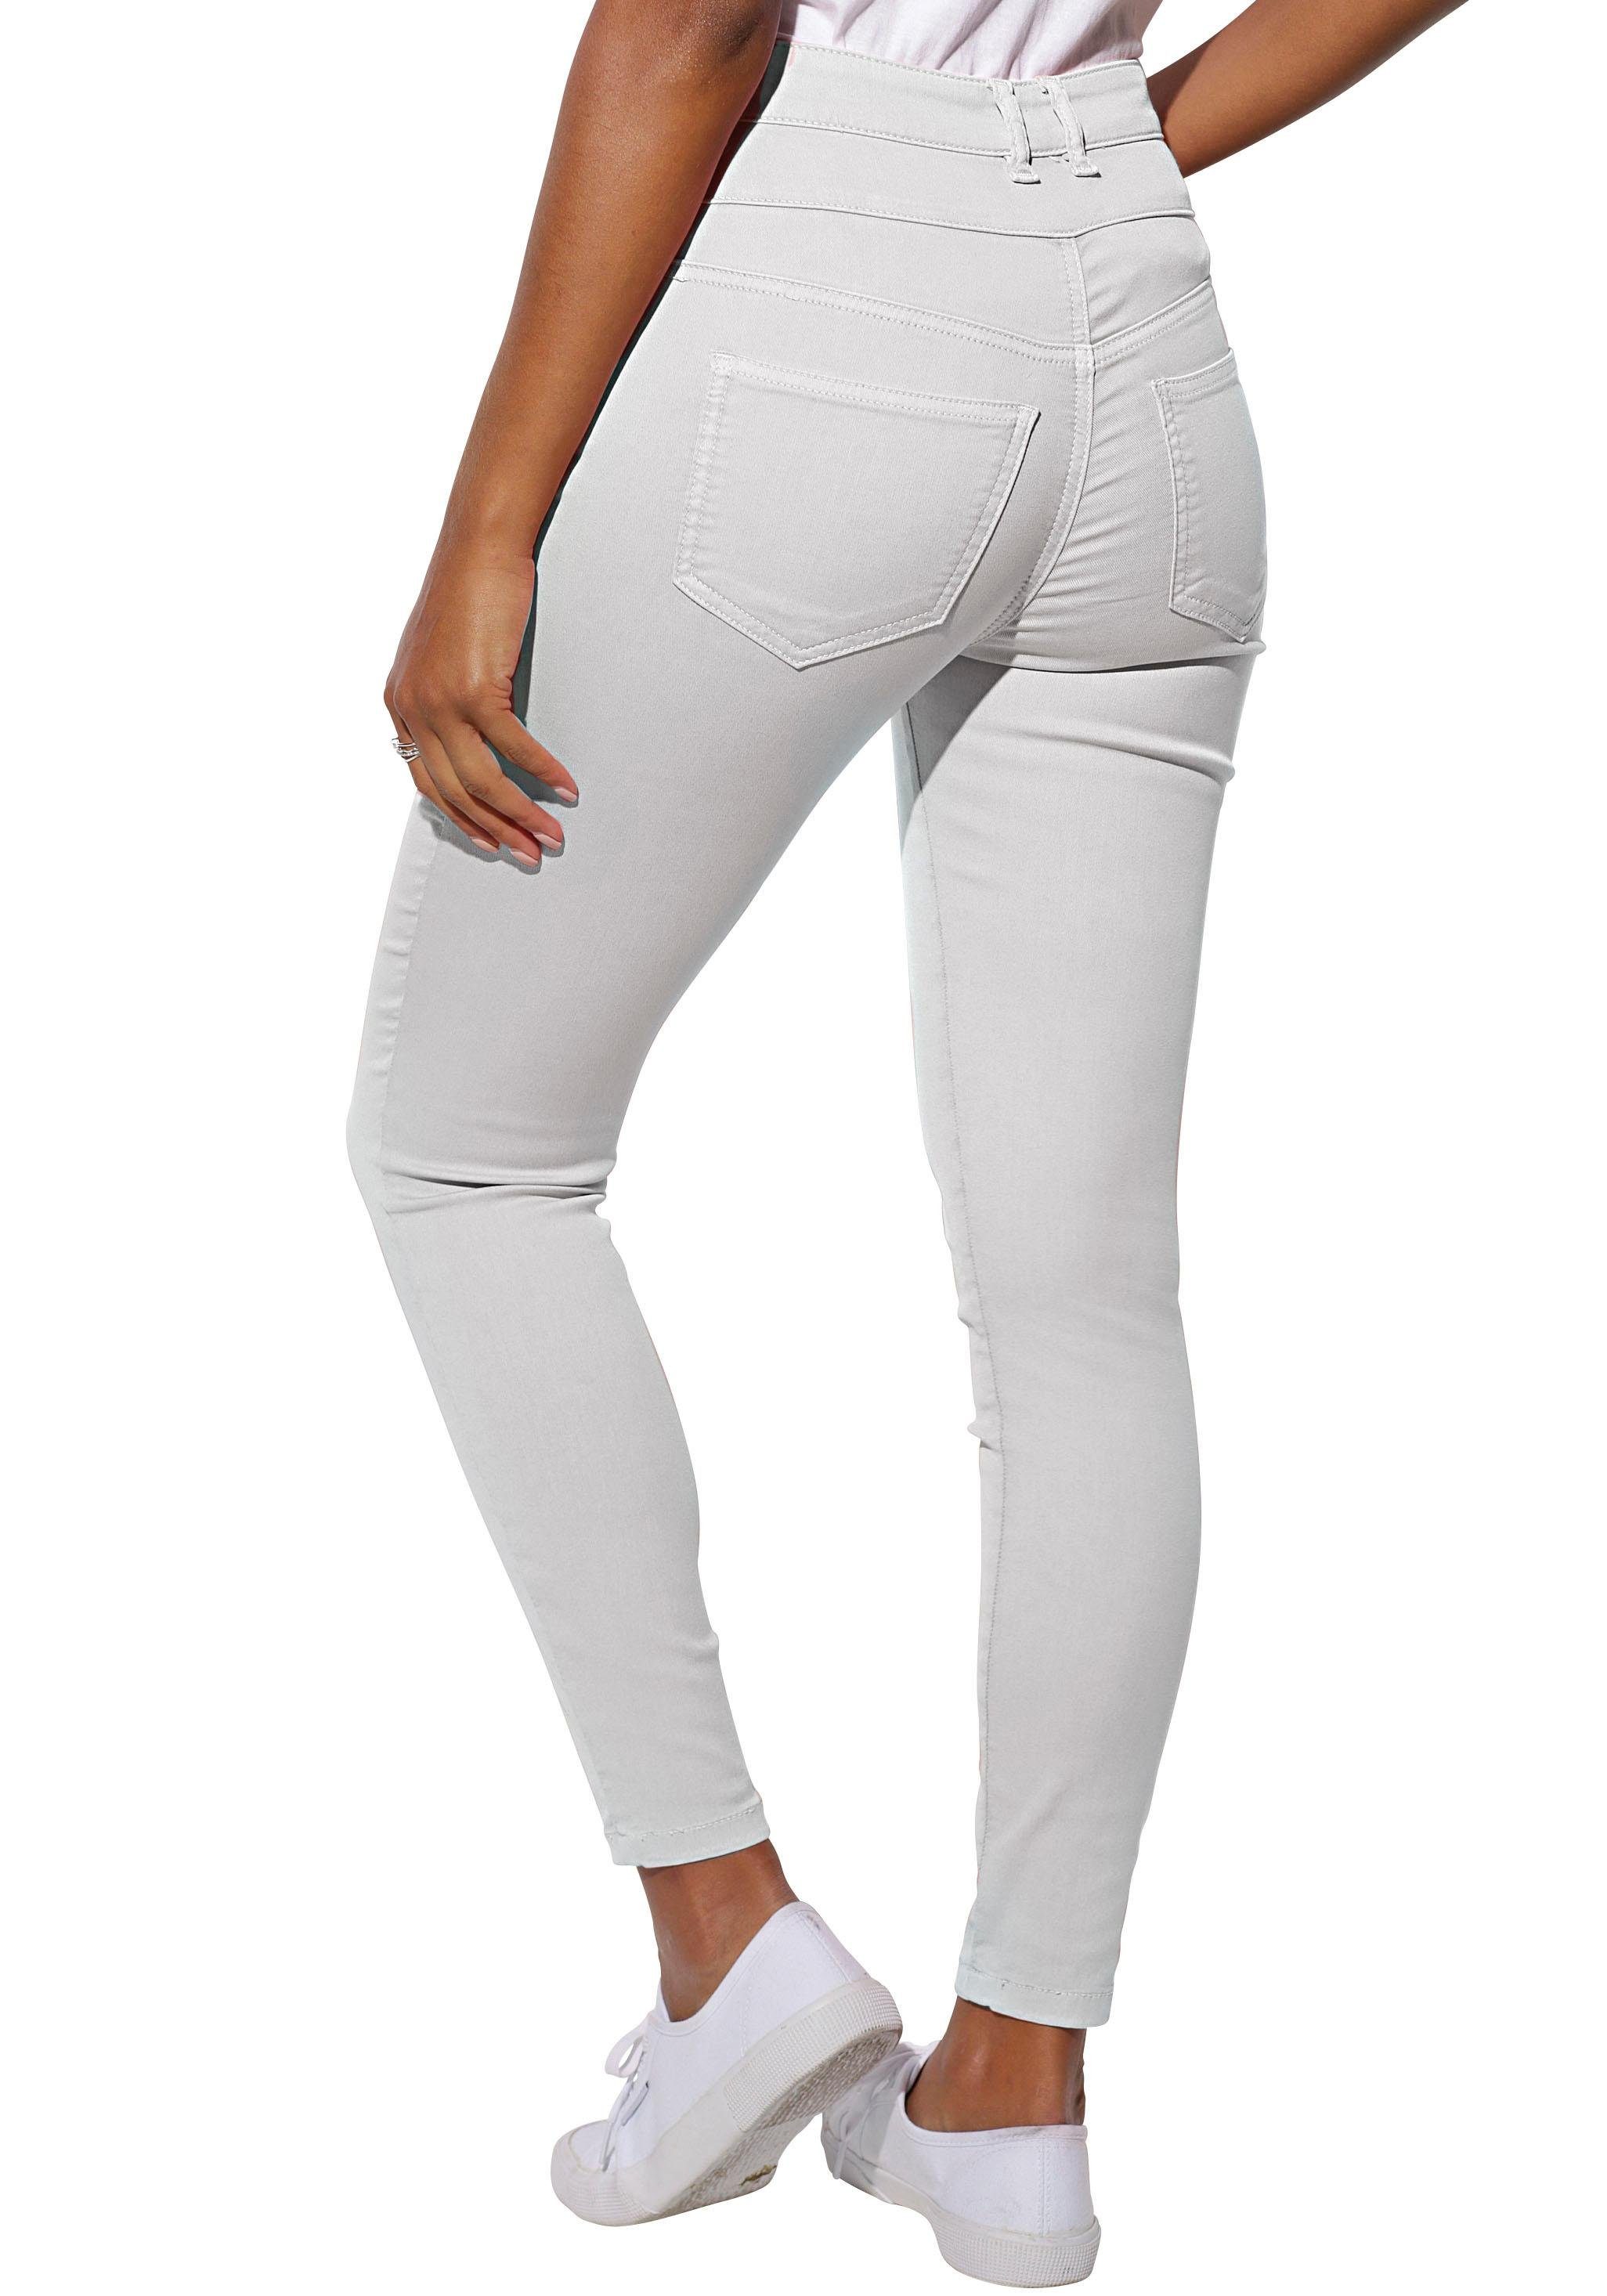 Weiße Skinny-Jeans online kaufen | OTTO